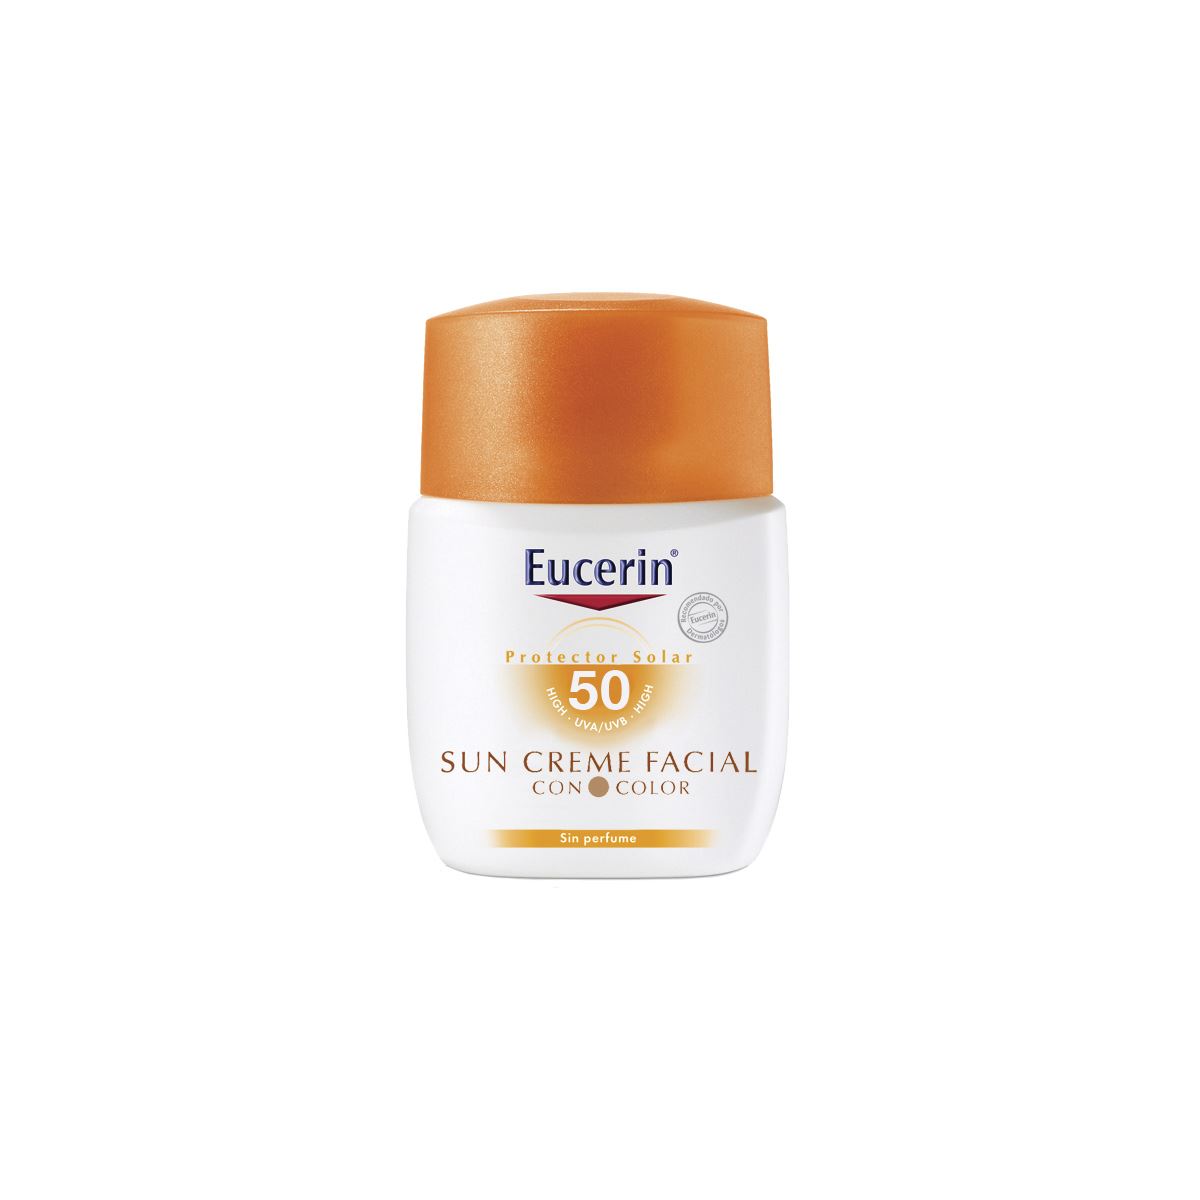 Eucerin Sun, Crema Facial con Color FPS 50+, 50ml